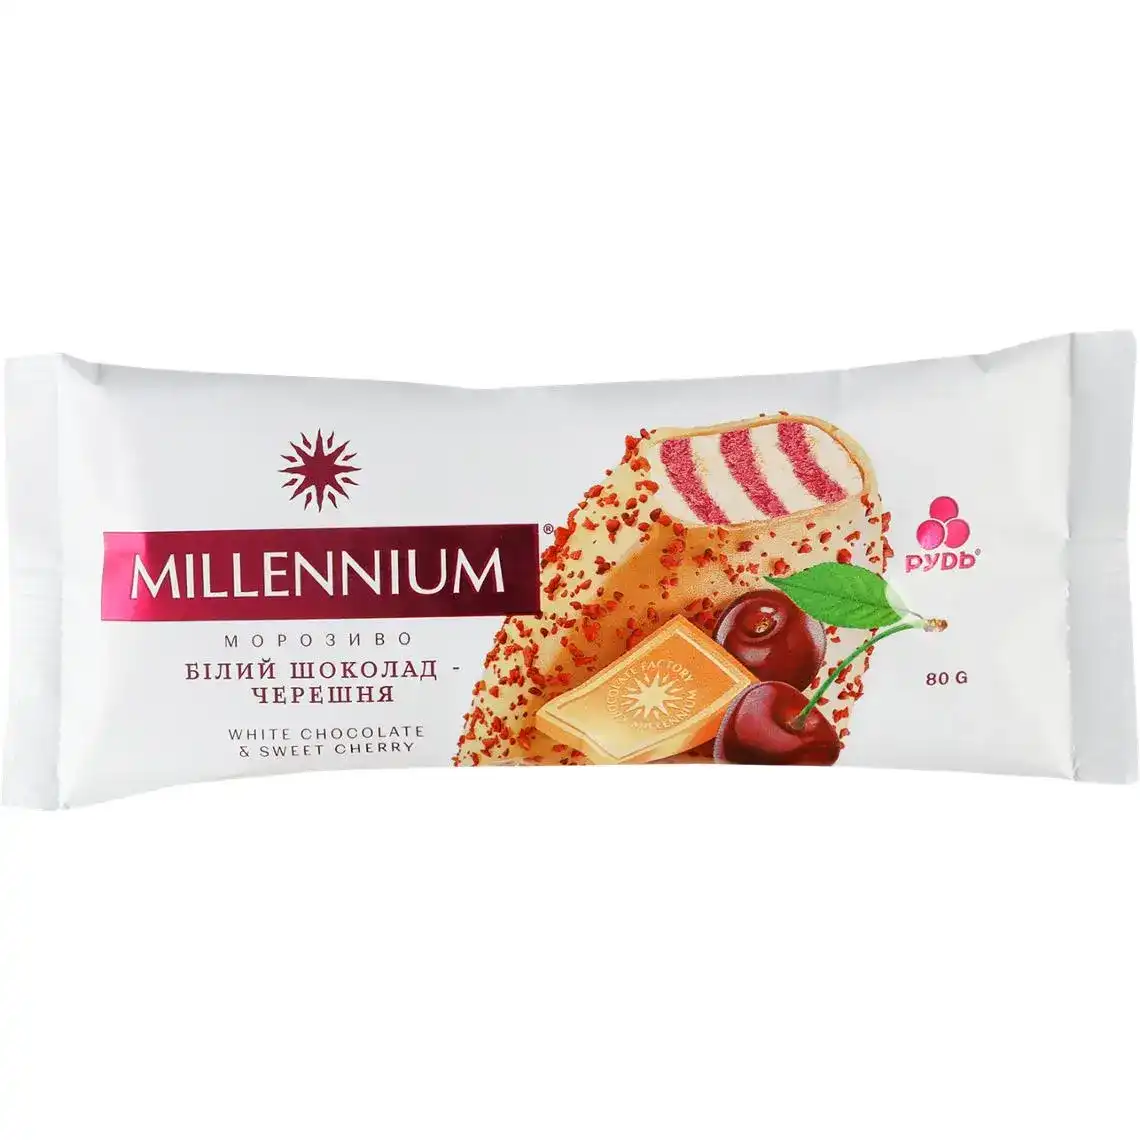 Морозиво Рудь Millennium білий шоколад-черешня вершкове 80 г